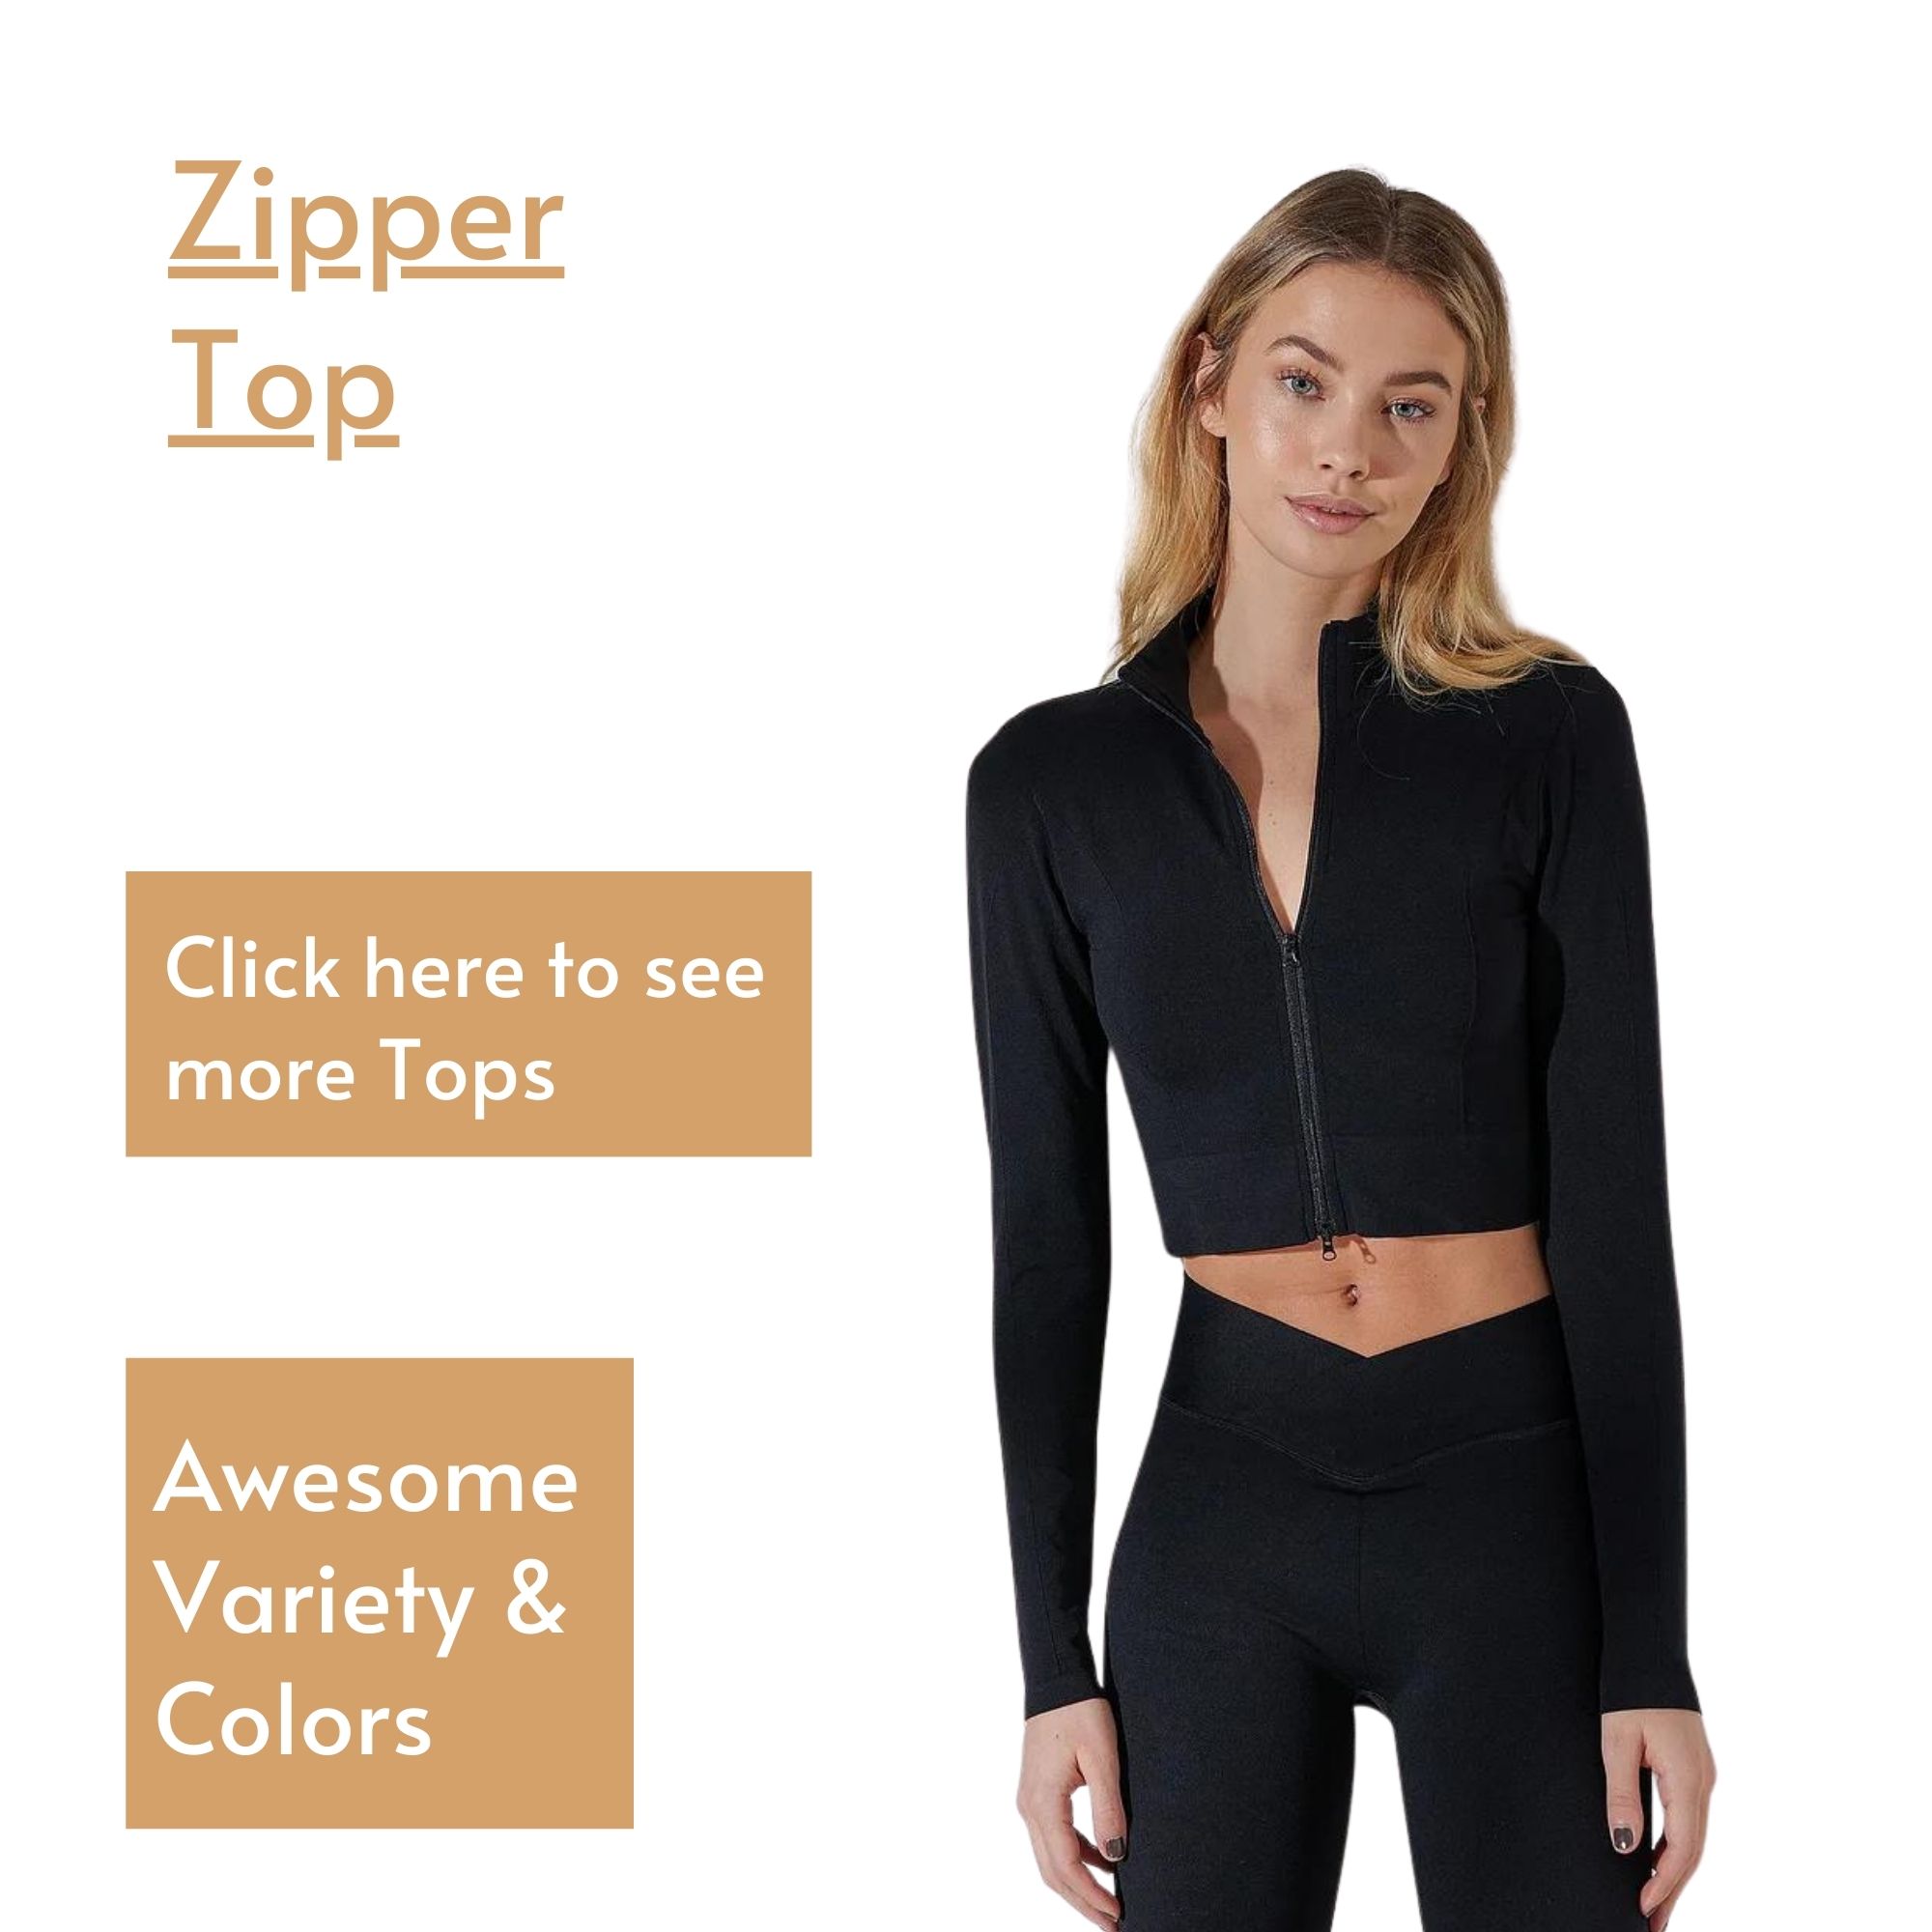 Zipper Top - Woman Tops